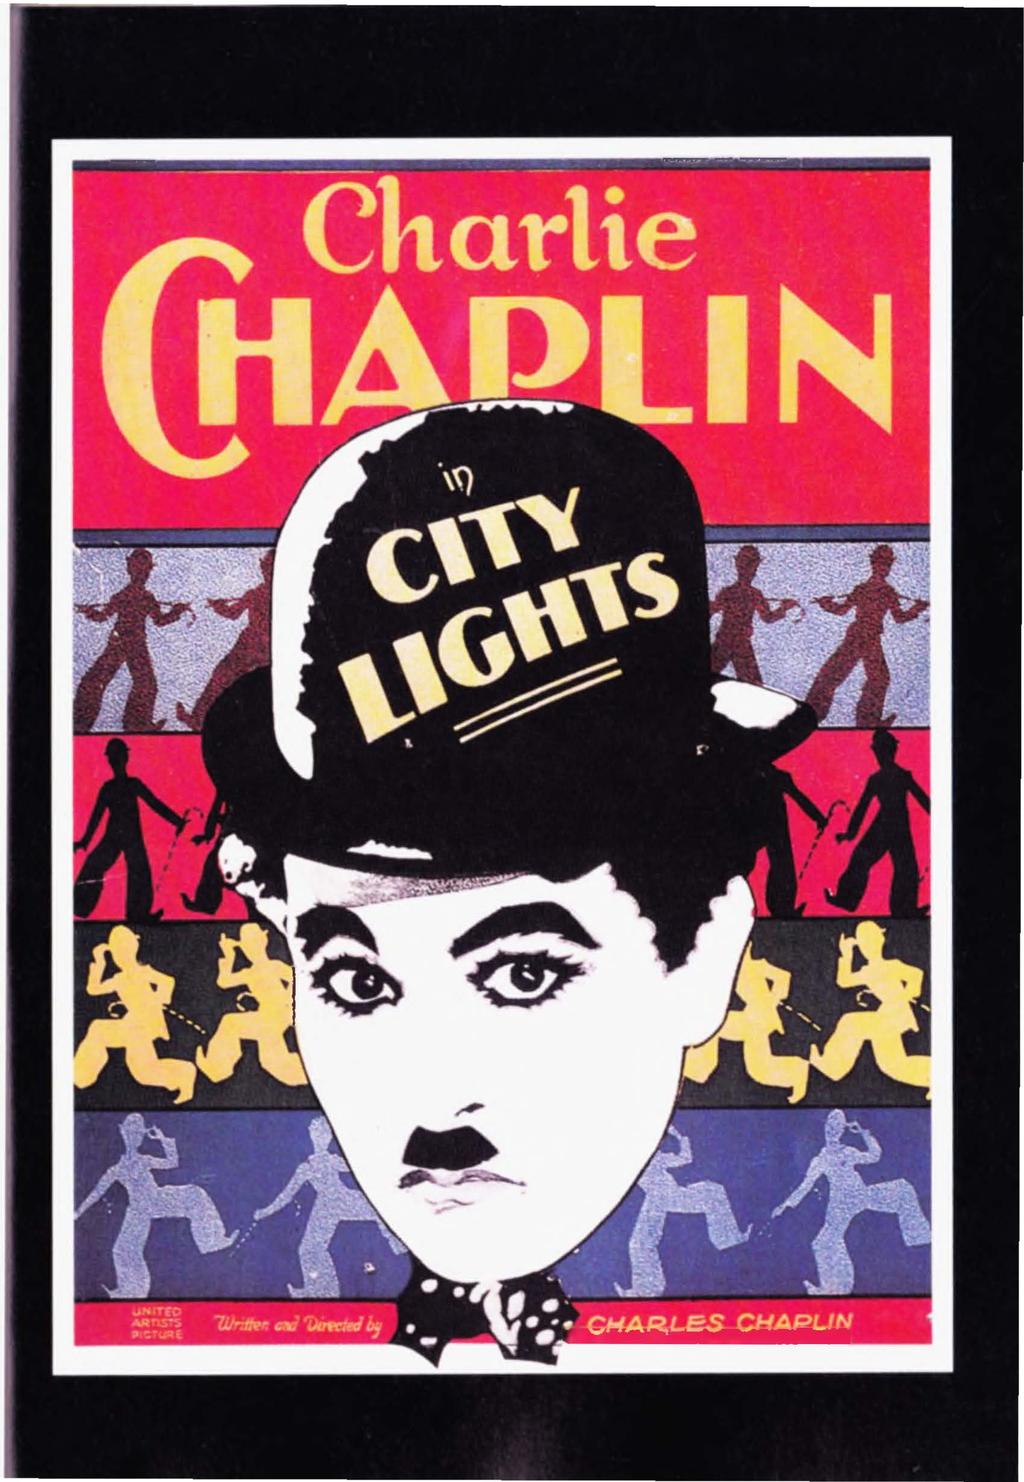 Karşıda: Bu poster "Kent lşıklan "adlı filmin reklamını yapıyor. Chaplin 'in stilize edilmiş posterleri, her yerde, yüzlerce oyuncak ve "Serseri " tiplemelerinin yanı sıra görülüyordu.